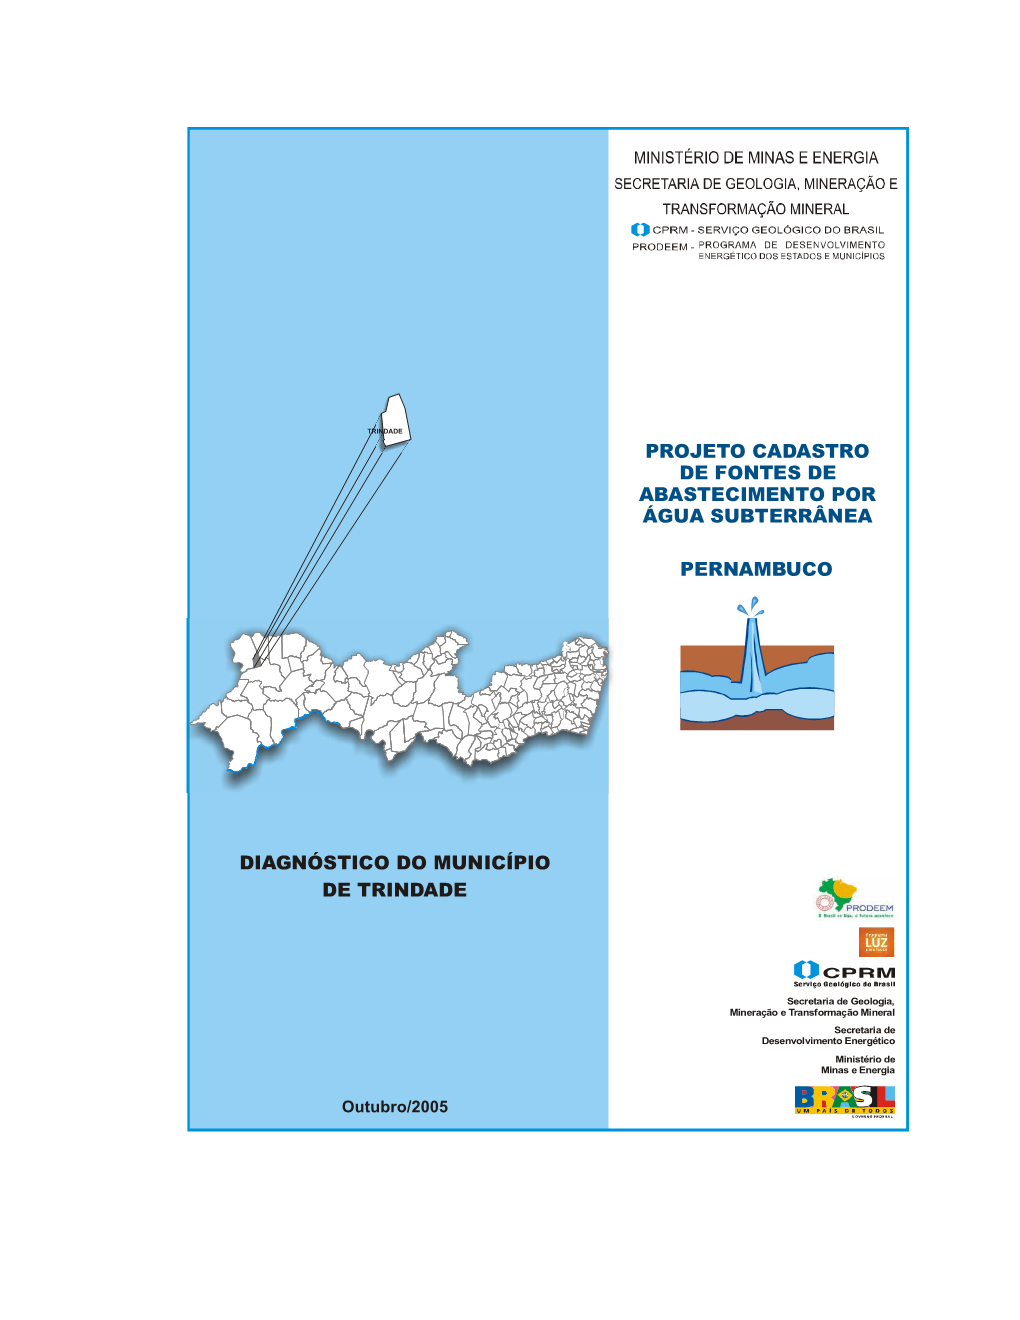 Diagnóstico Do Município De Trindade Pernambuco Projeto Cadastro De Fontes De Abastecimento Por Água Subterrânea